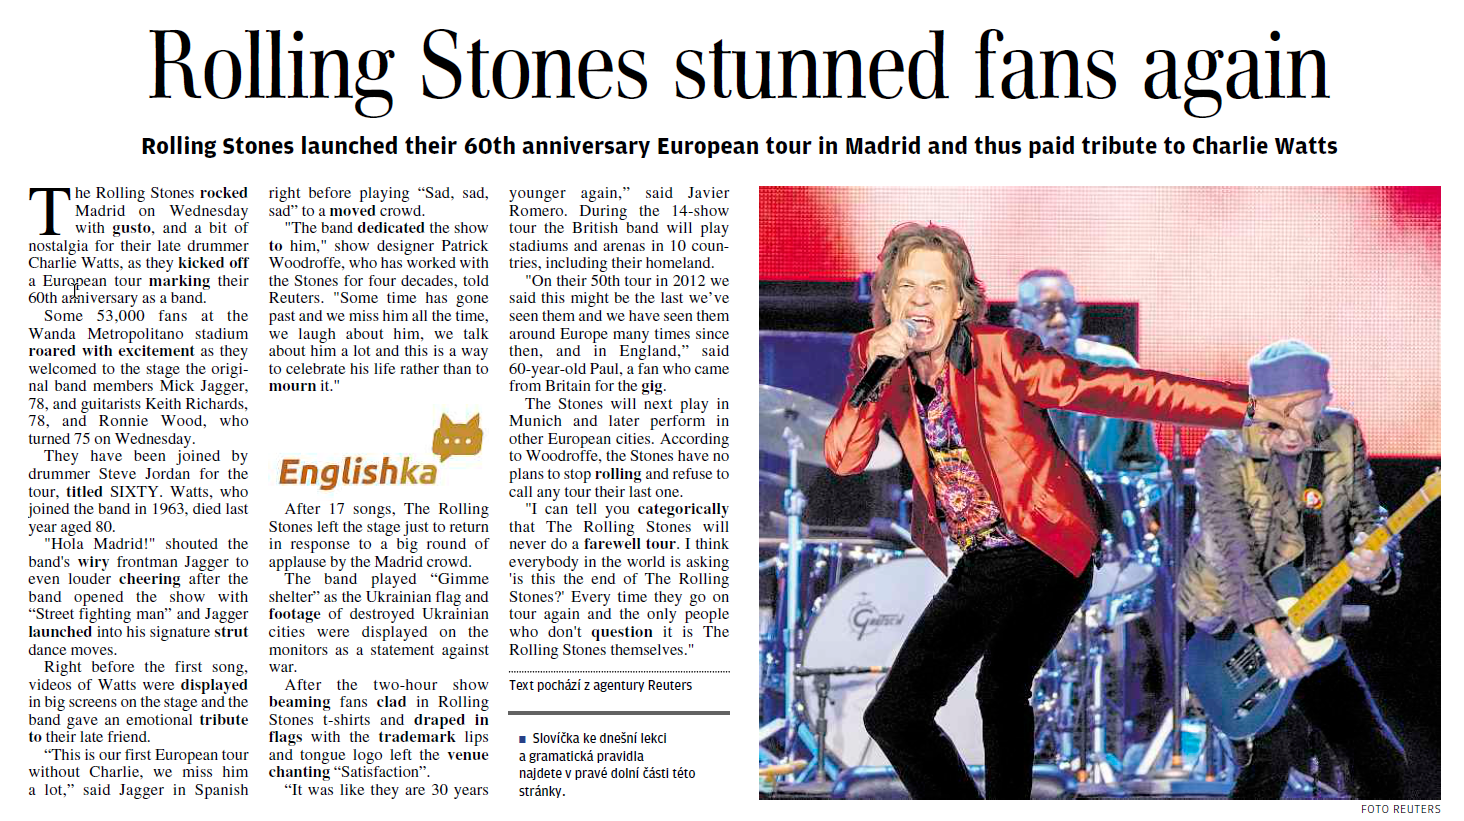 Náhled článku o Rolling Stones v angličtině